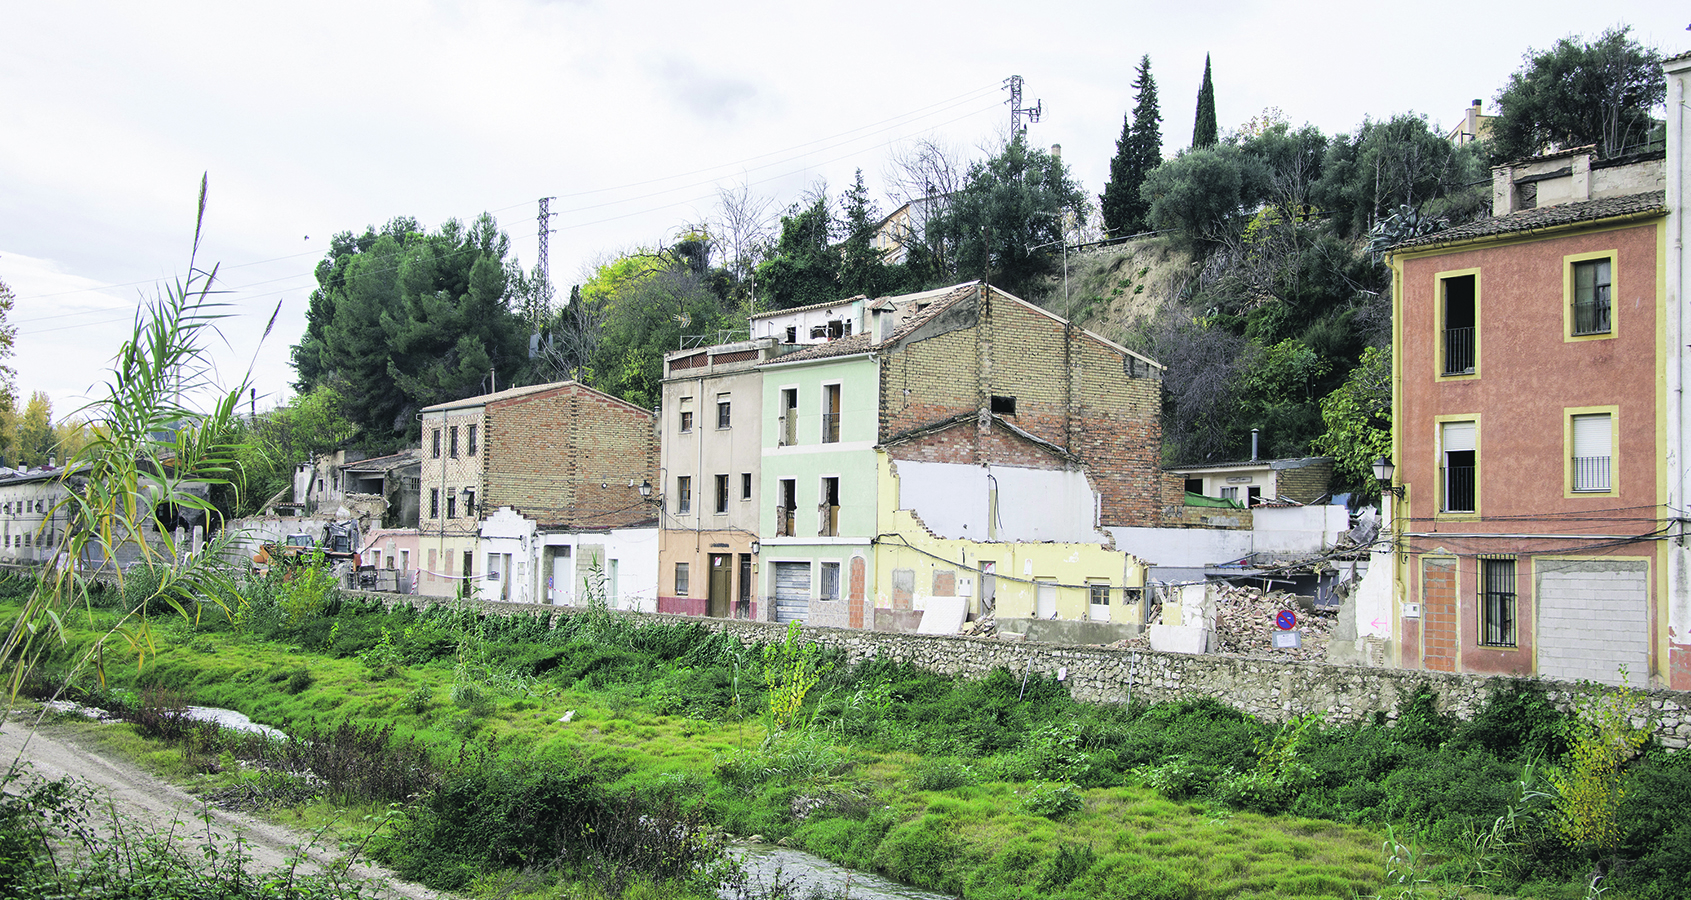 S’expropien les 4 últimes cases de la Cantereria per al parc fluvial El Periòdic d'Ontinyent - Noticies a Ontinyent